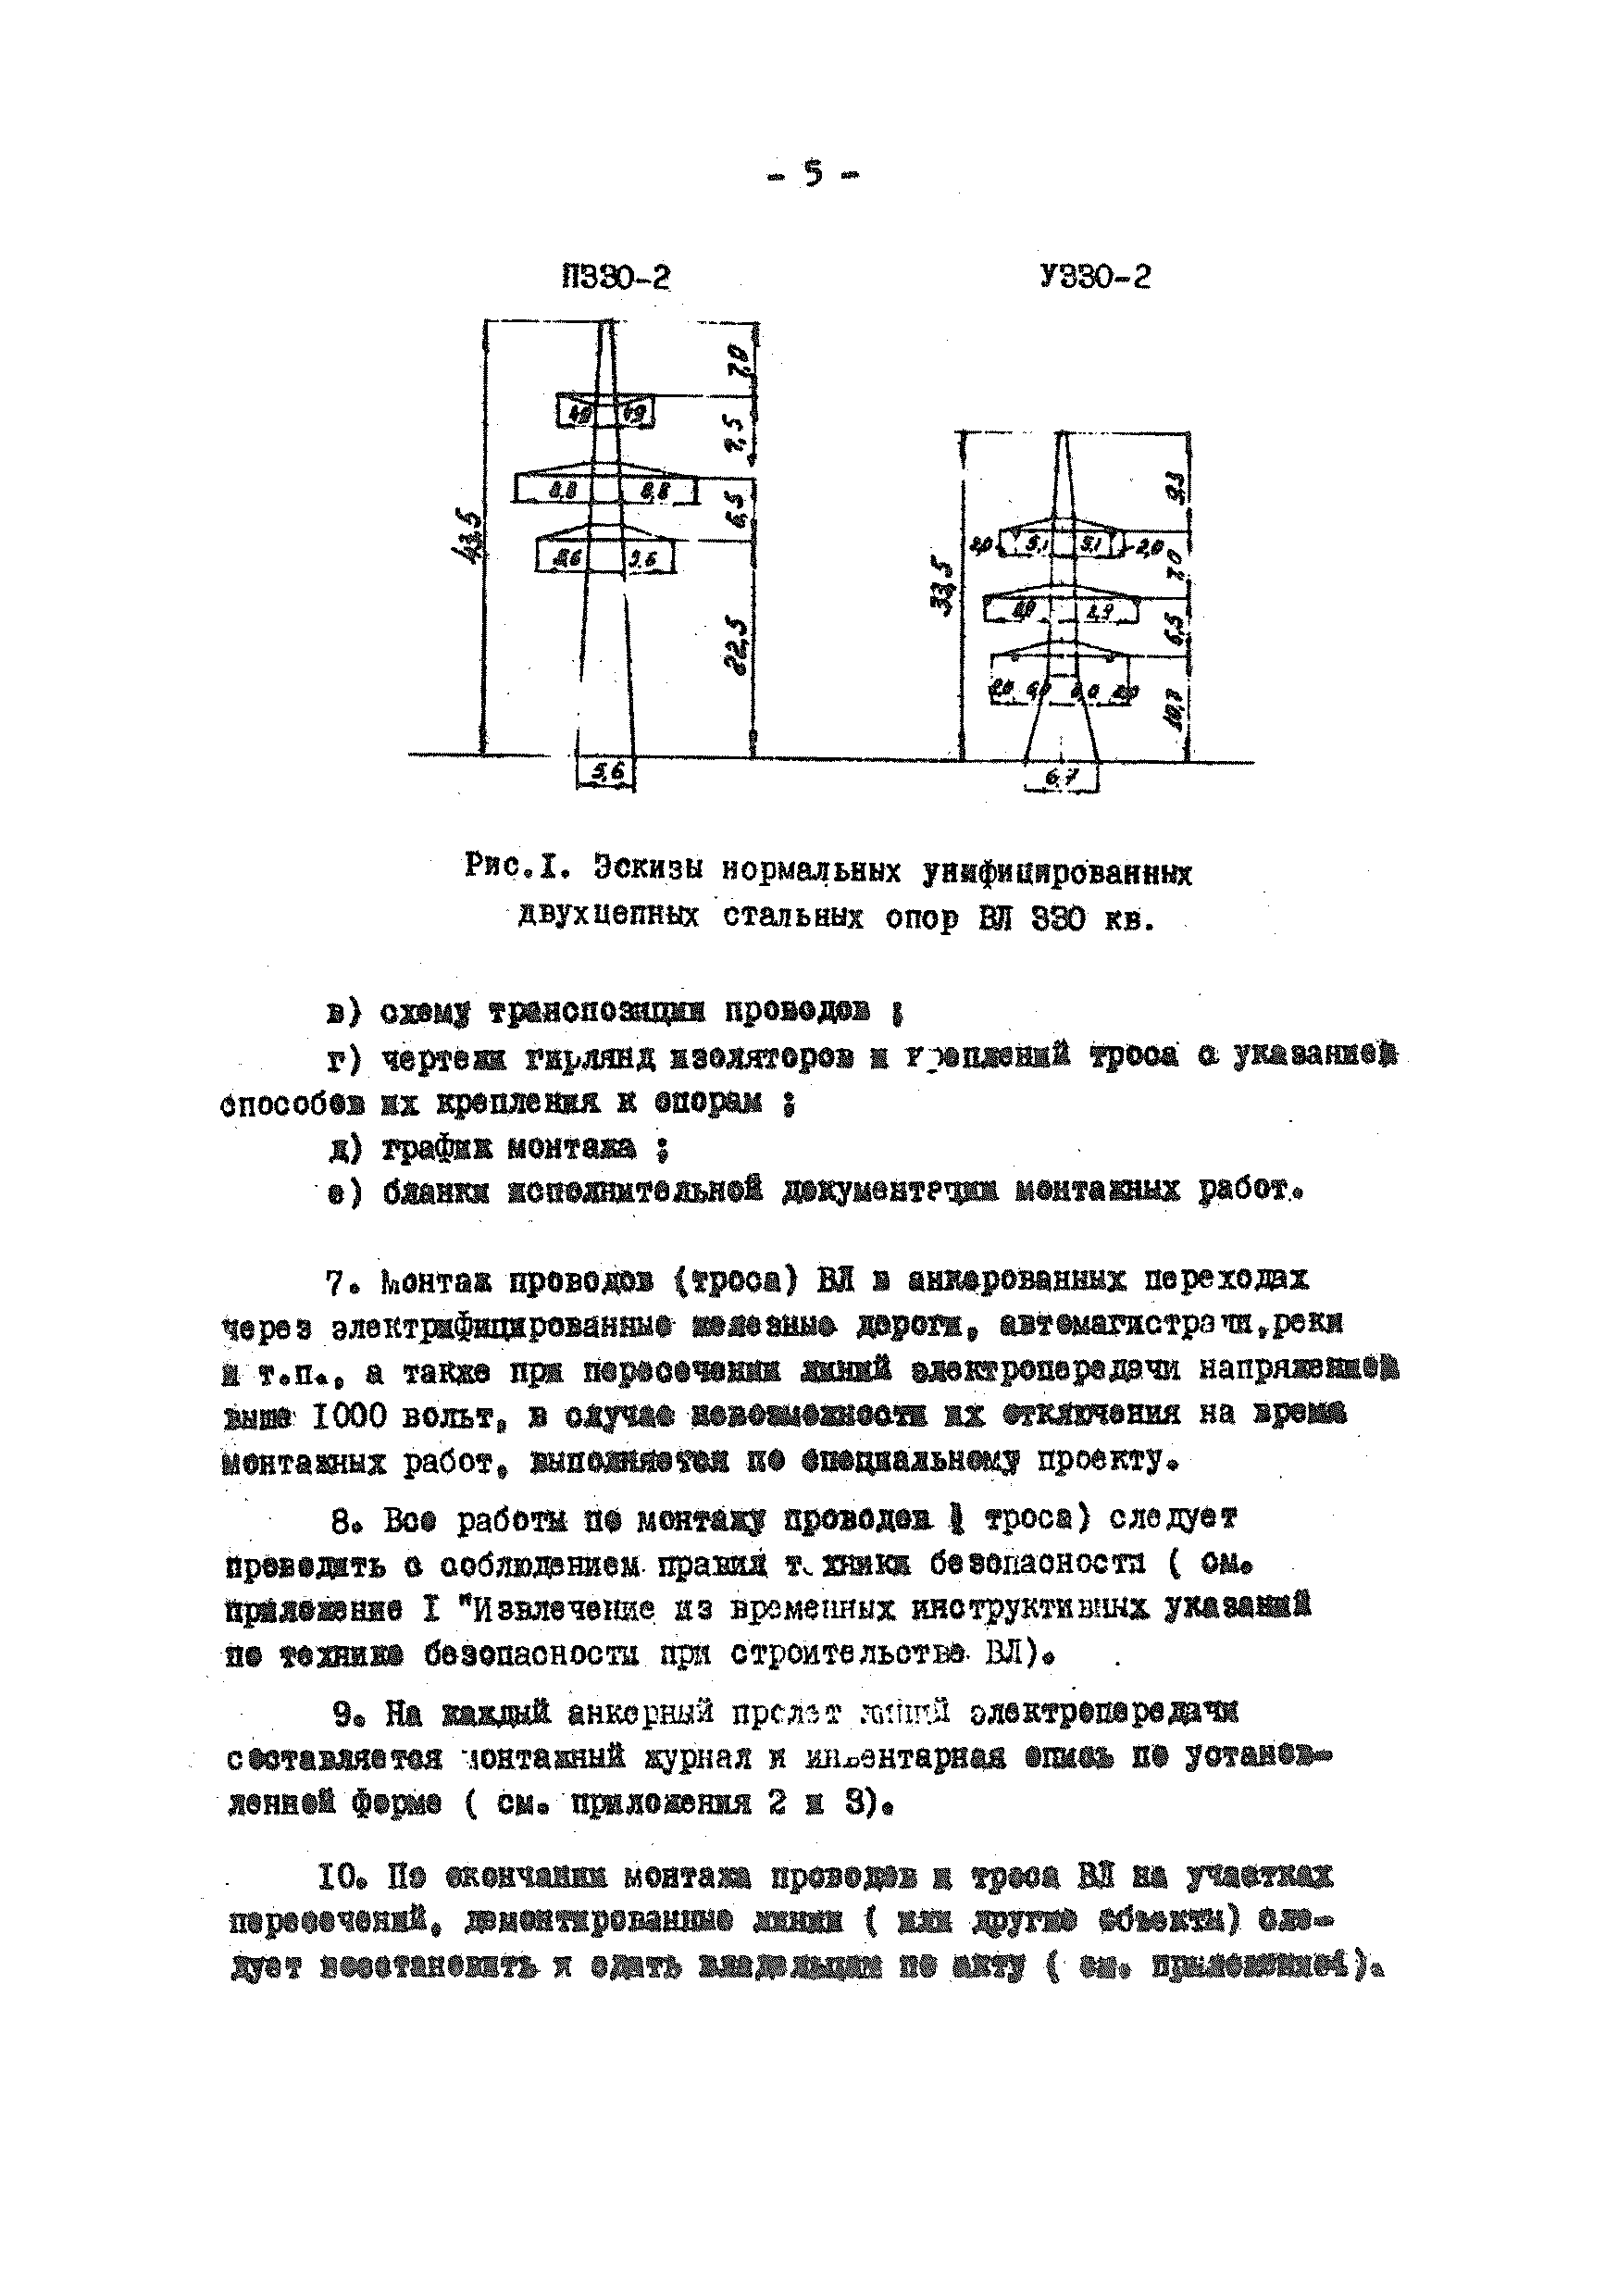 ТТК К-V-14-3